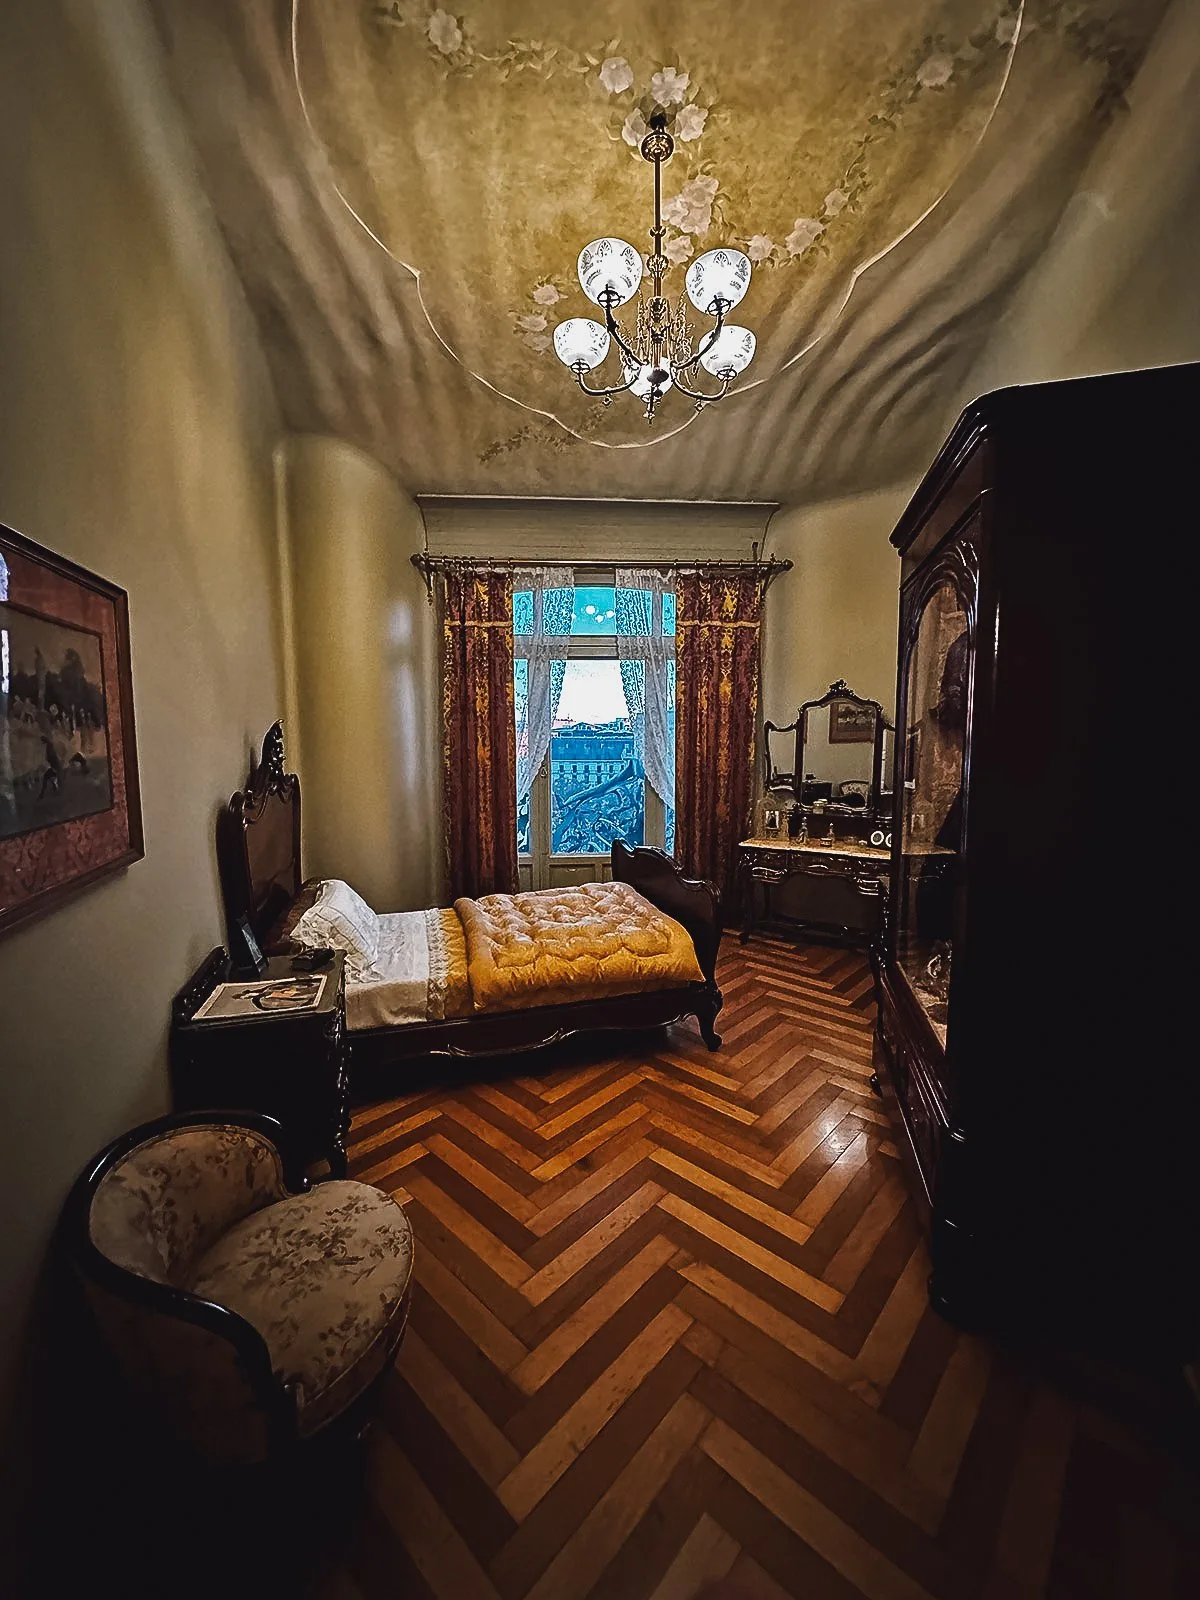 Room inside Casa Mila in Barcelona